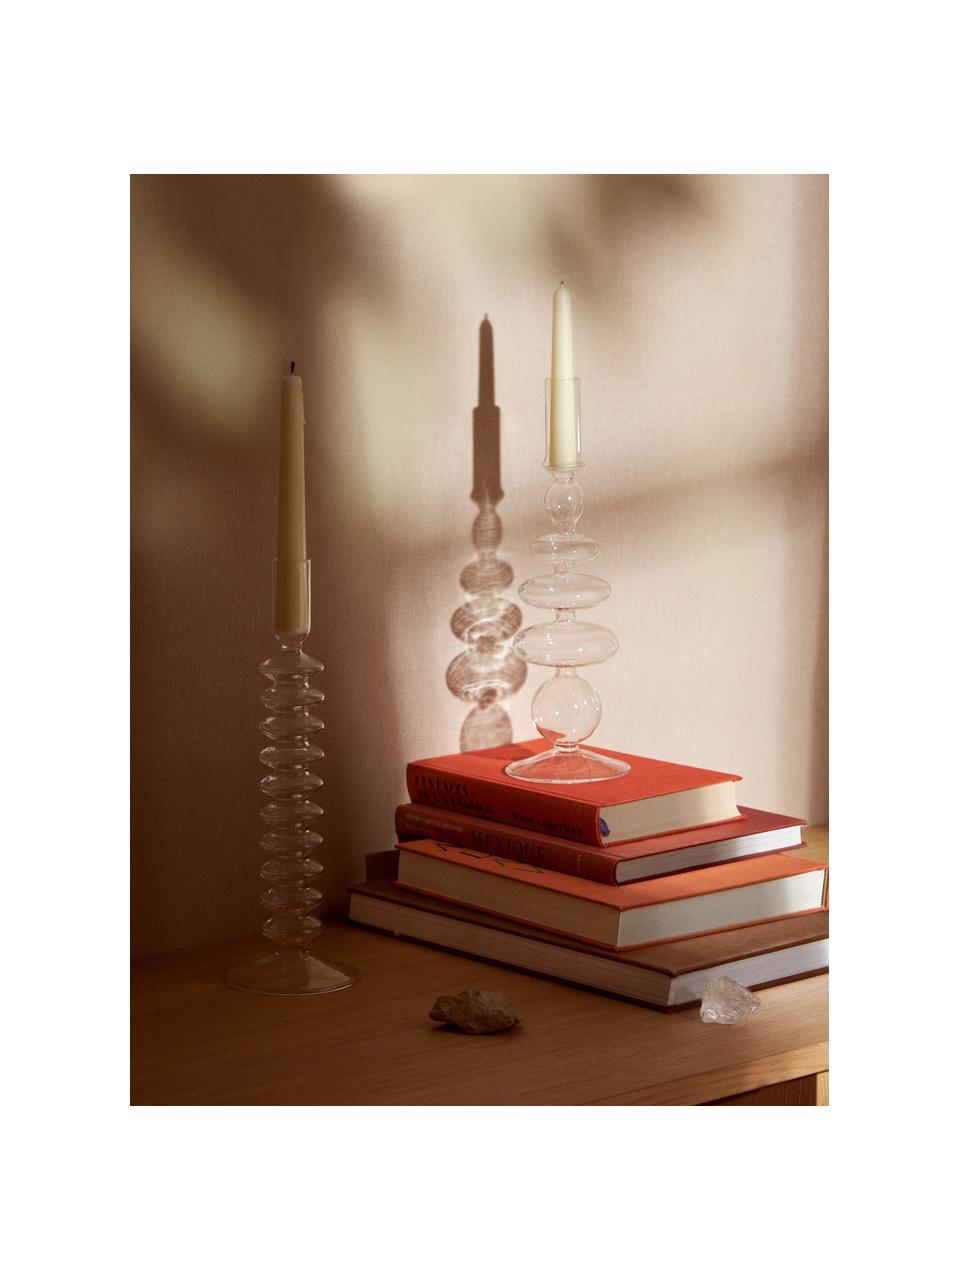 Kerzenhalter Clea, 2er-Set, Glas, Transparent, Set mit verschiedenen Größen